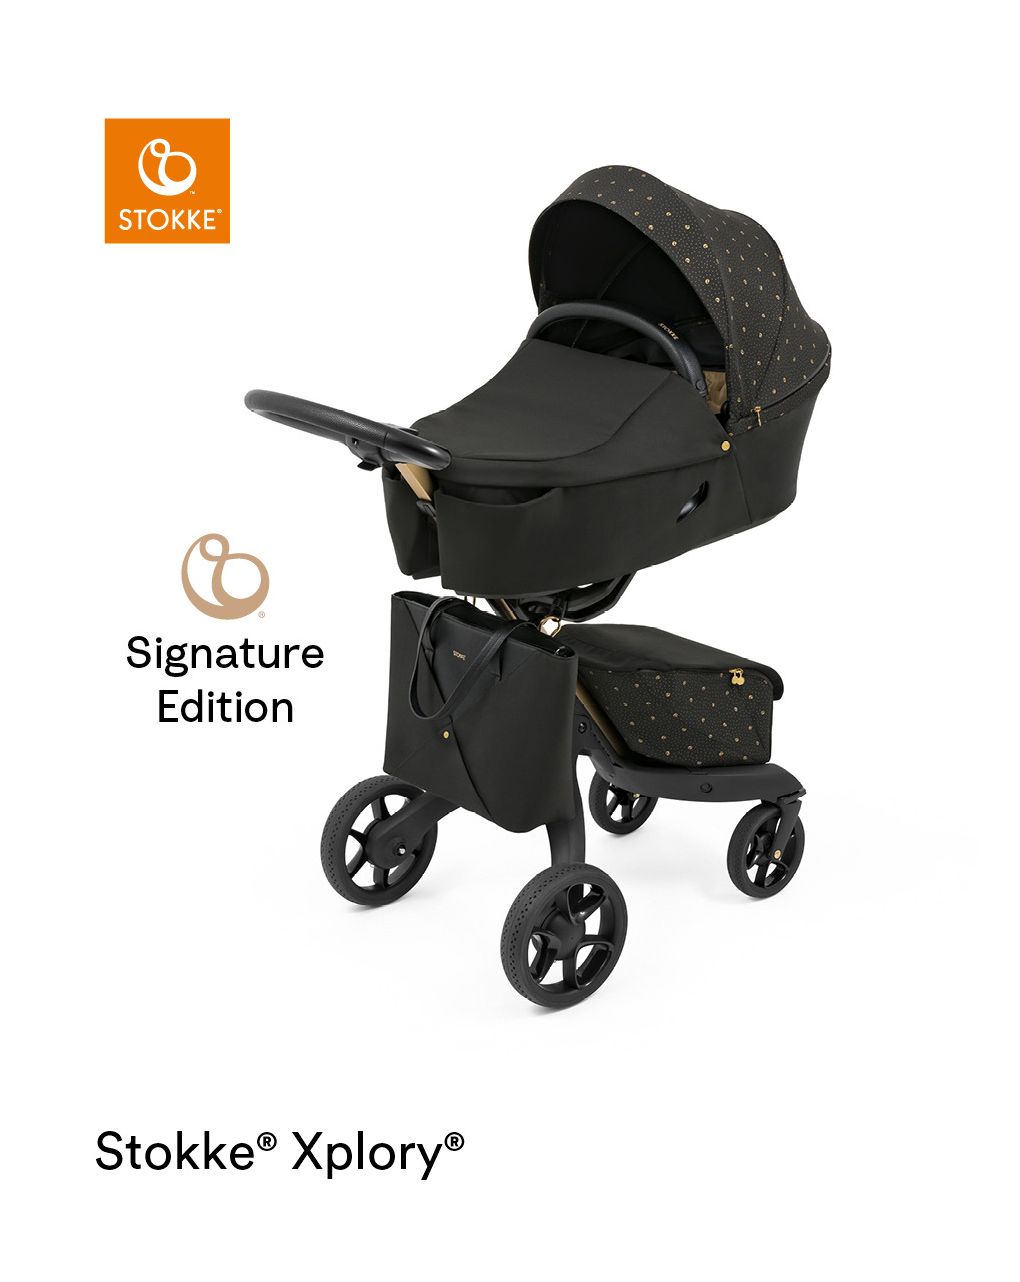 Navetta stokke® xplory® x signature edition - per il comfort del neonato anche fuori casa - Stokke